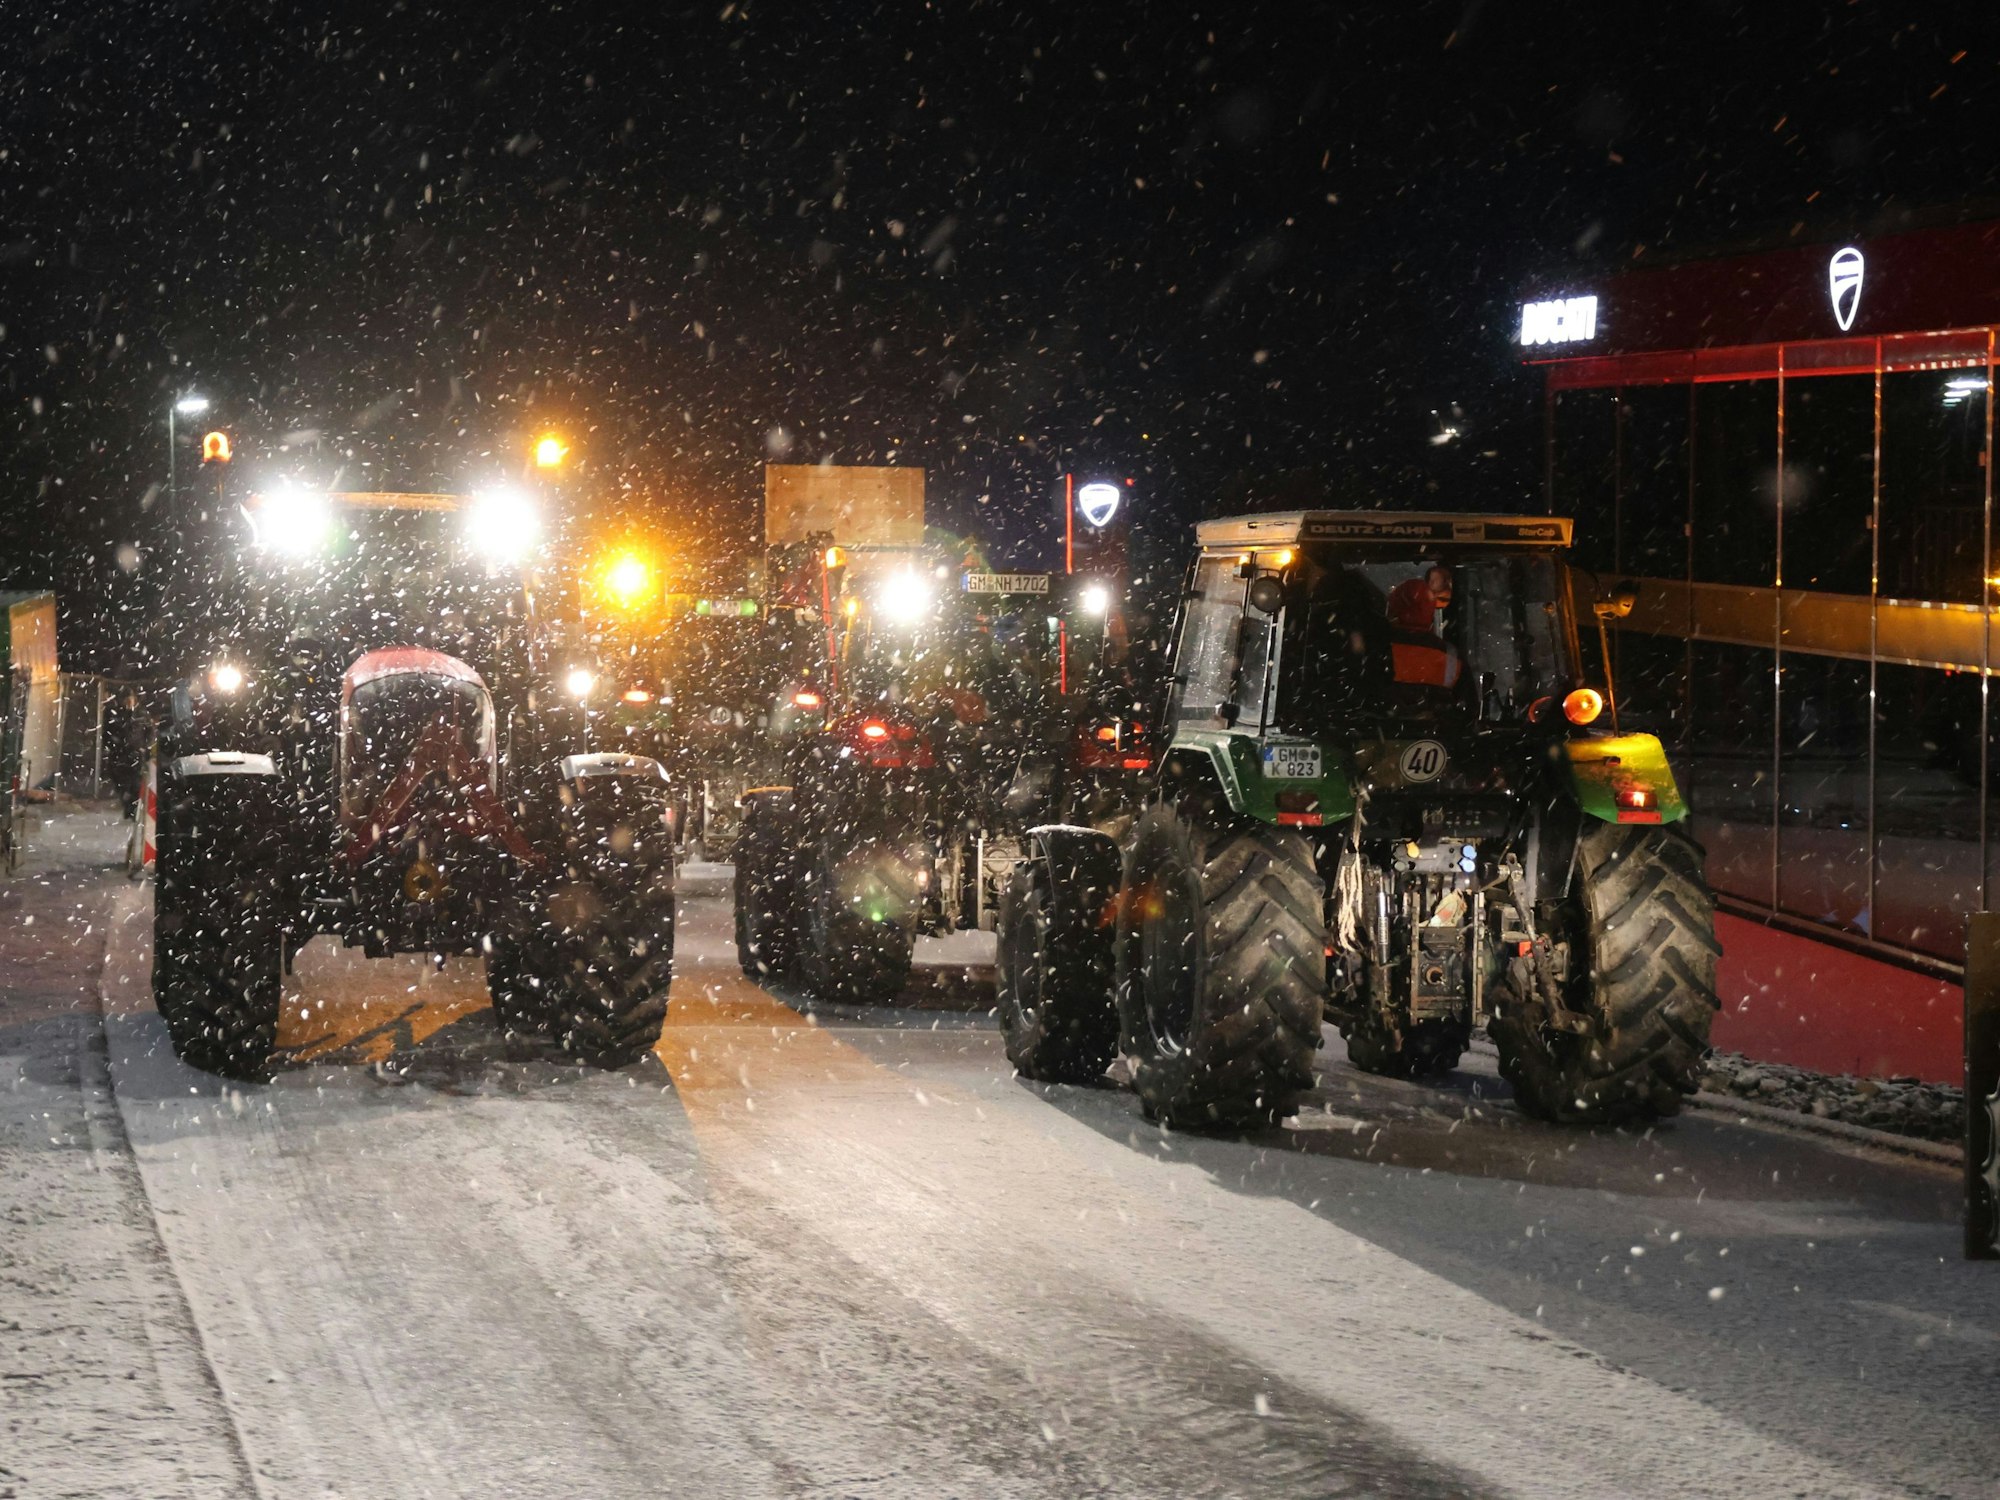 Mehrere Traktoren im Schneegestöber.